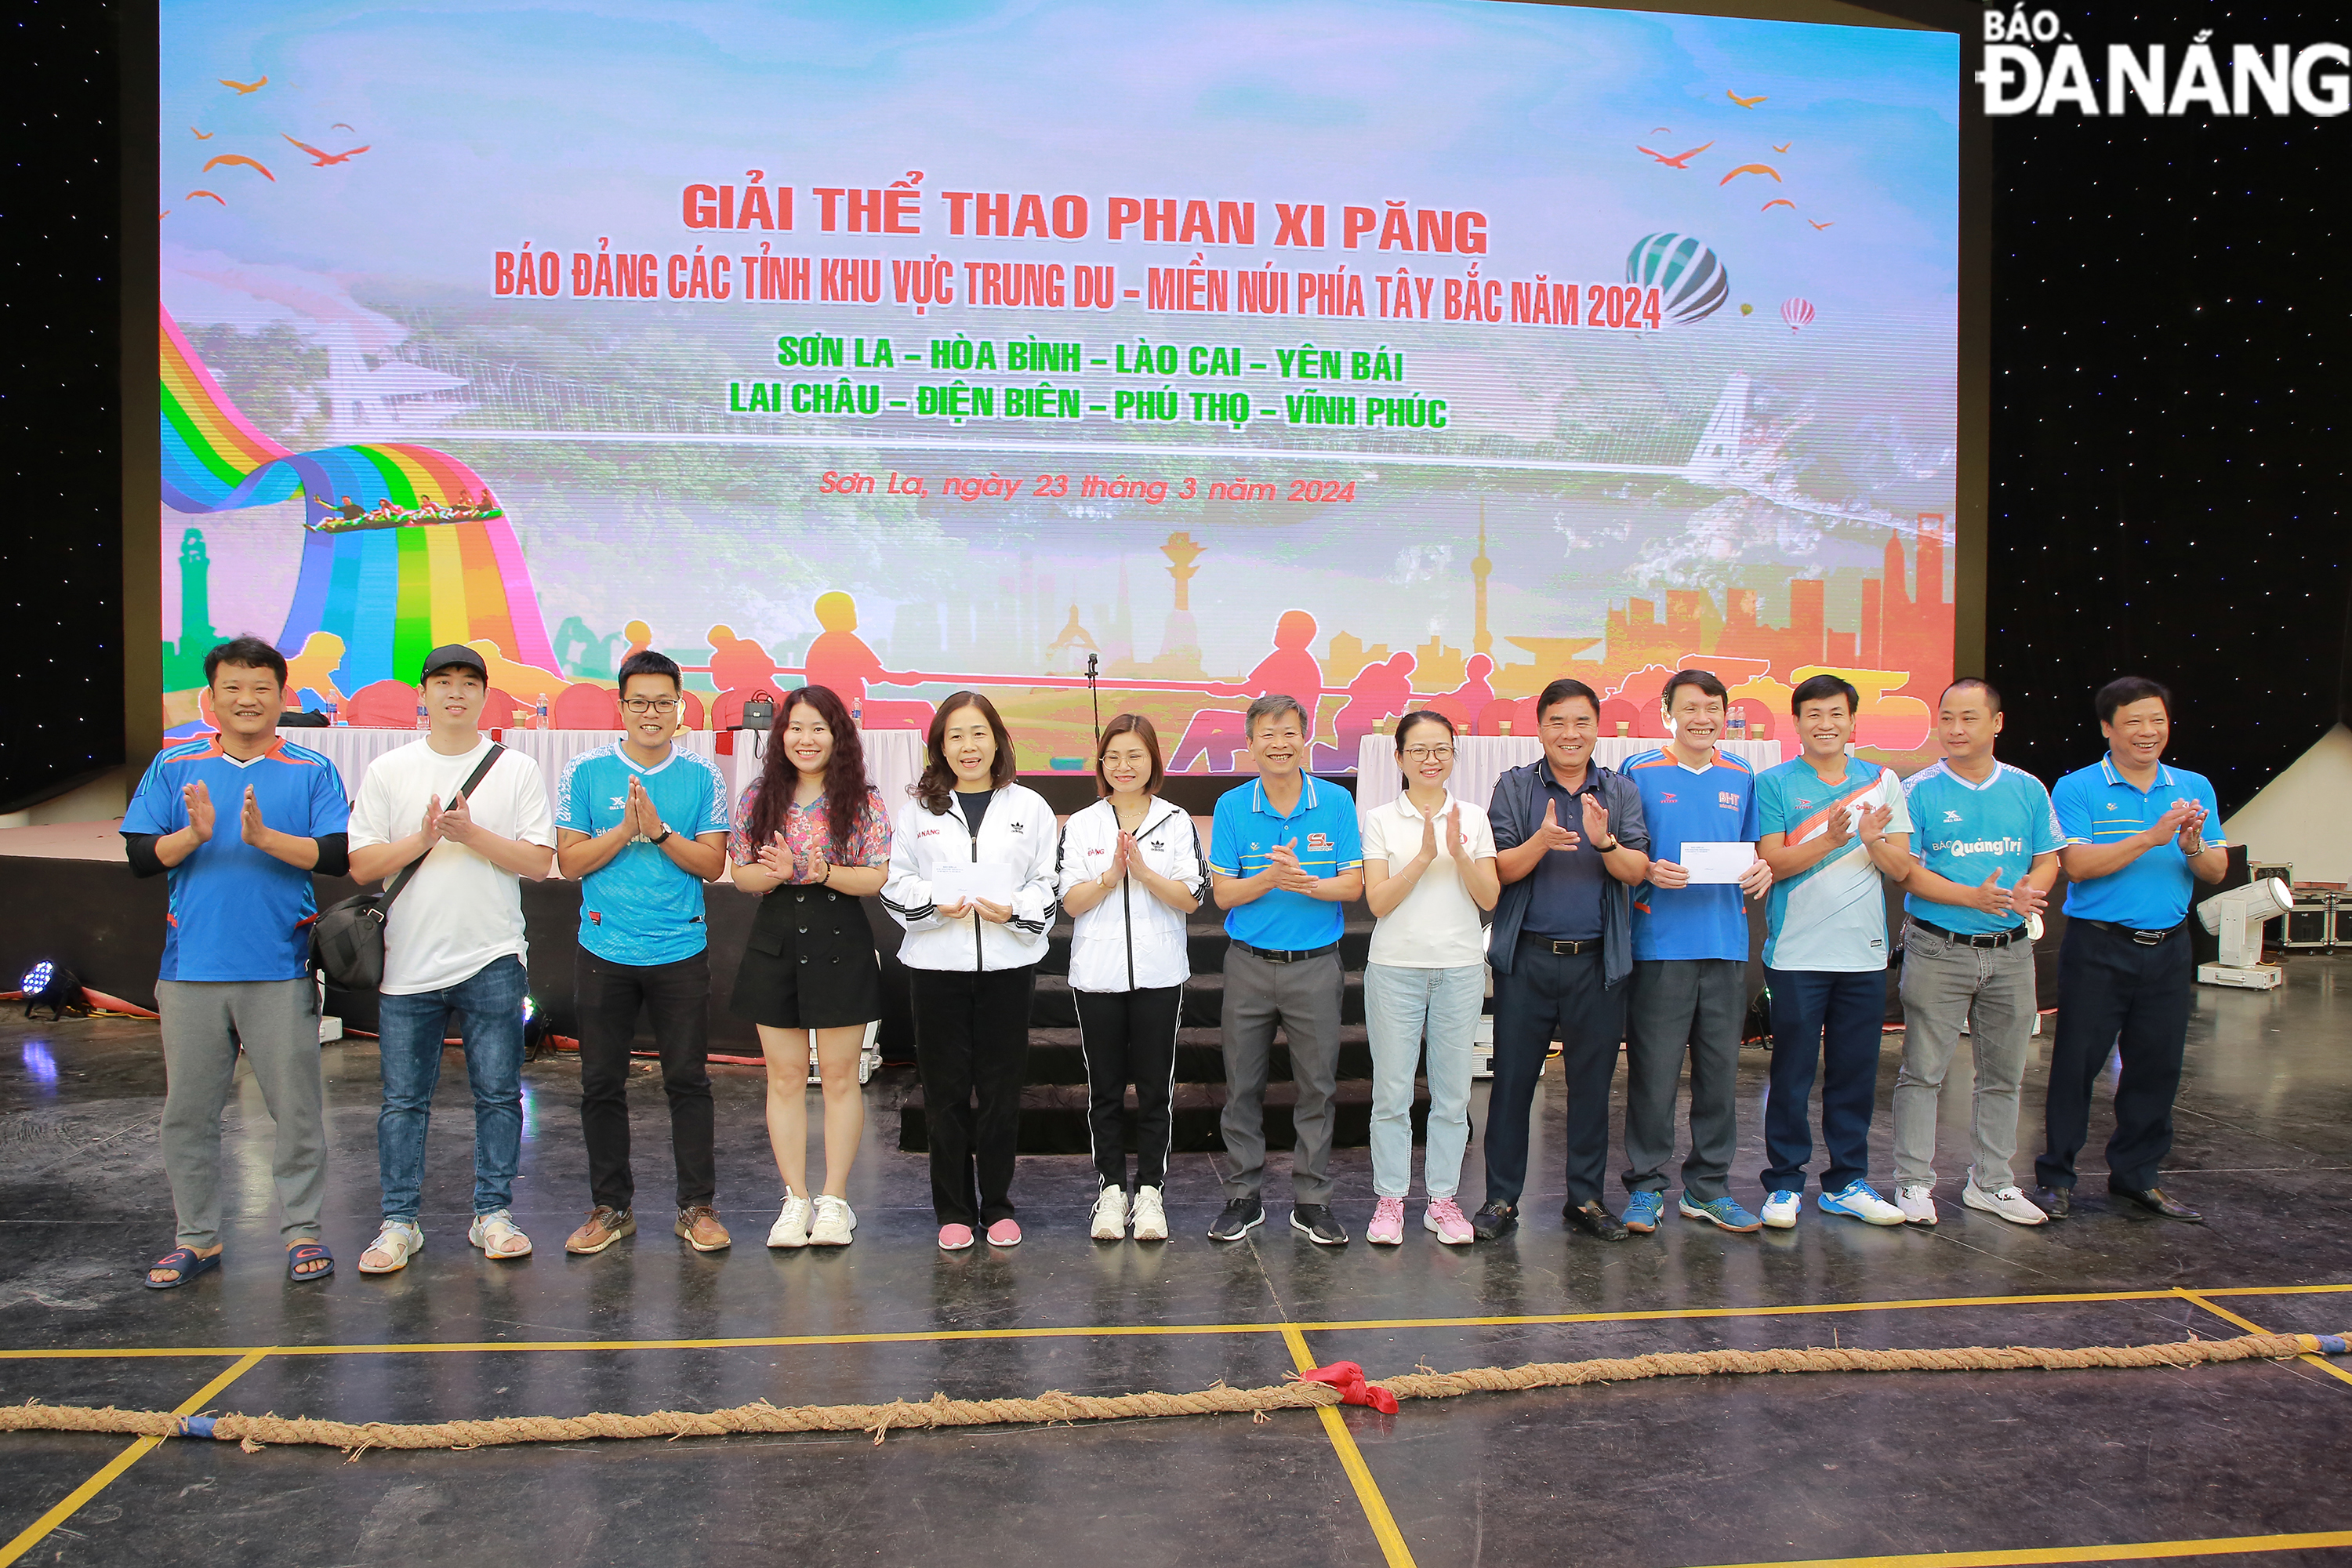 Gần 250 vận động viên tham dự giải thể thao Phan Xi Păng Báo Đảng các tỉnh khu vực Trung du - Miền núi phía Tây Bắc